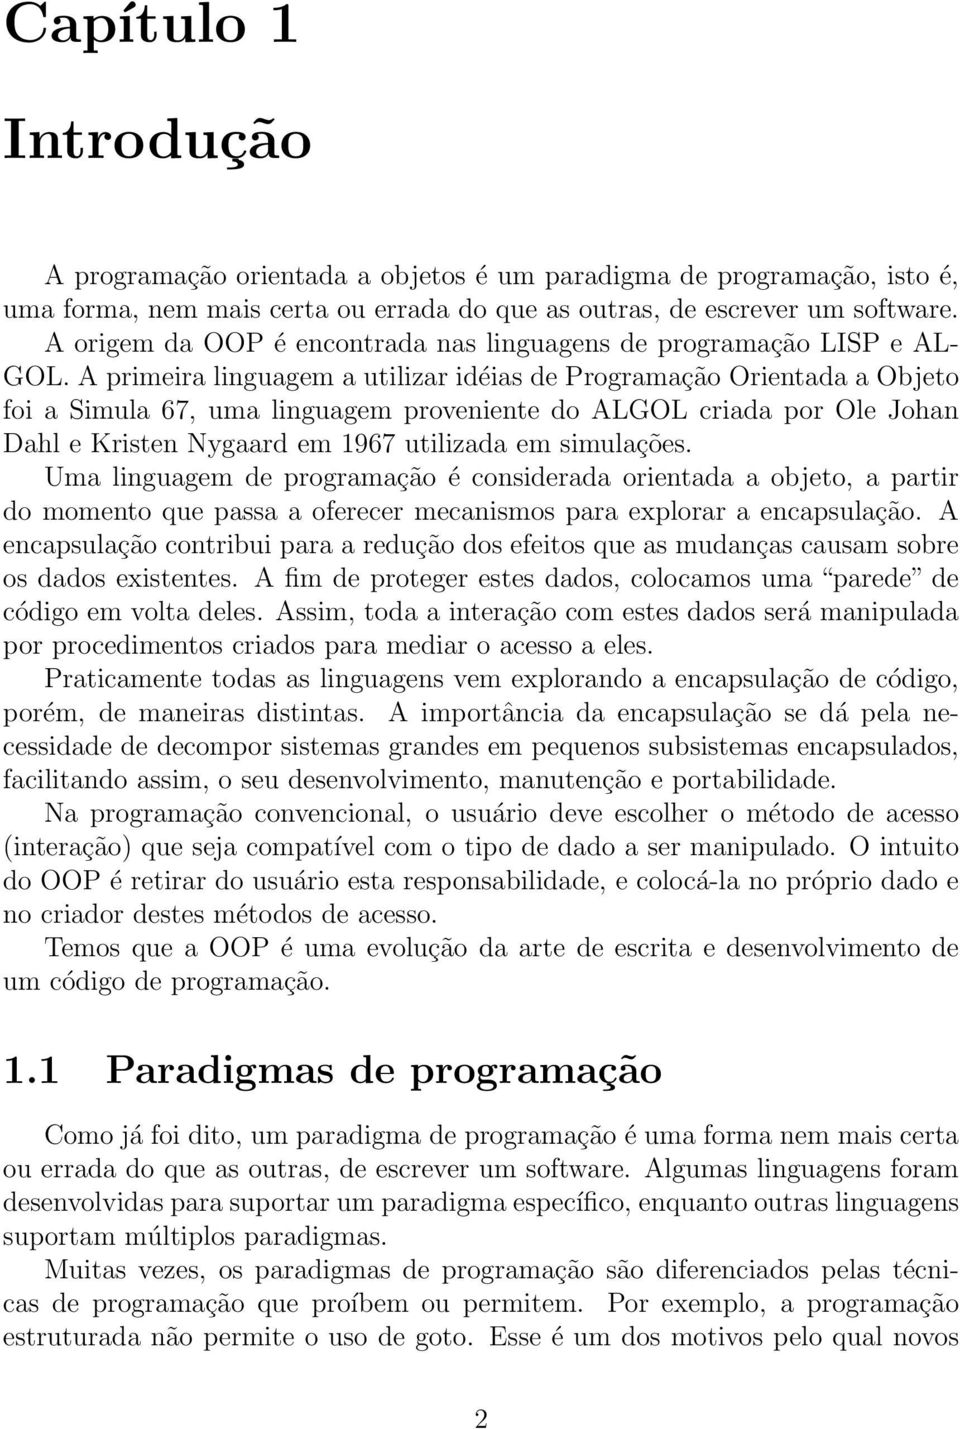 A primeira linguagem a utilizar idéias de Programação Orientada a Objeto foi a Simula 67, uma linguagem proveniente do ALGOL criada por Ole Johan Dahl e Kristen Nygaard em 1967 utilizada em